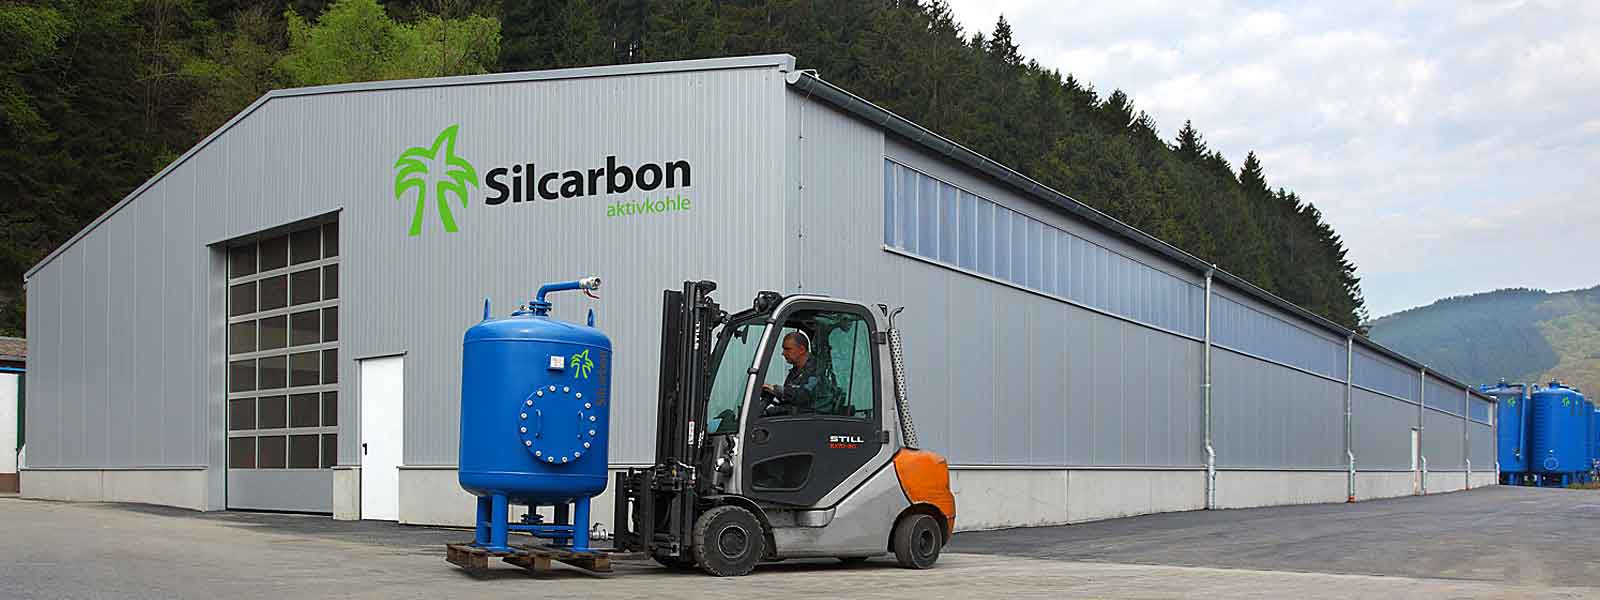 Silcarbon.ru предлагает всю линейку углей немецкой компании Silcarbon